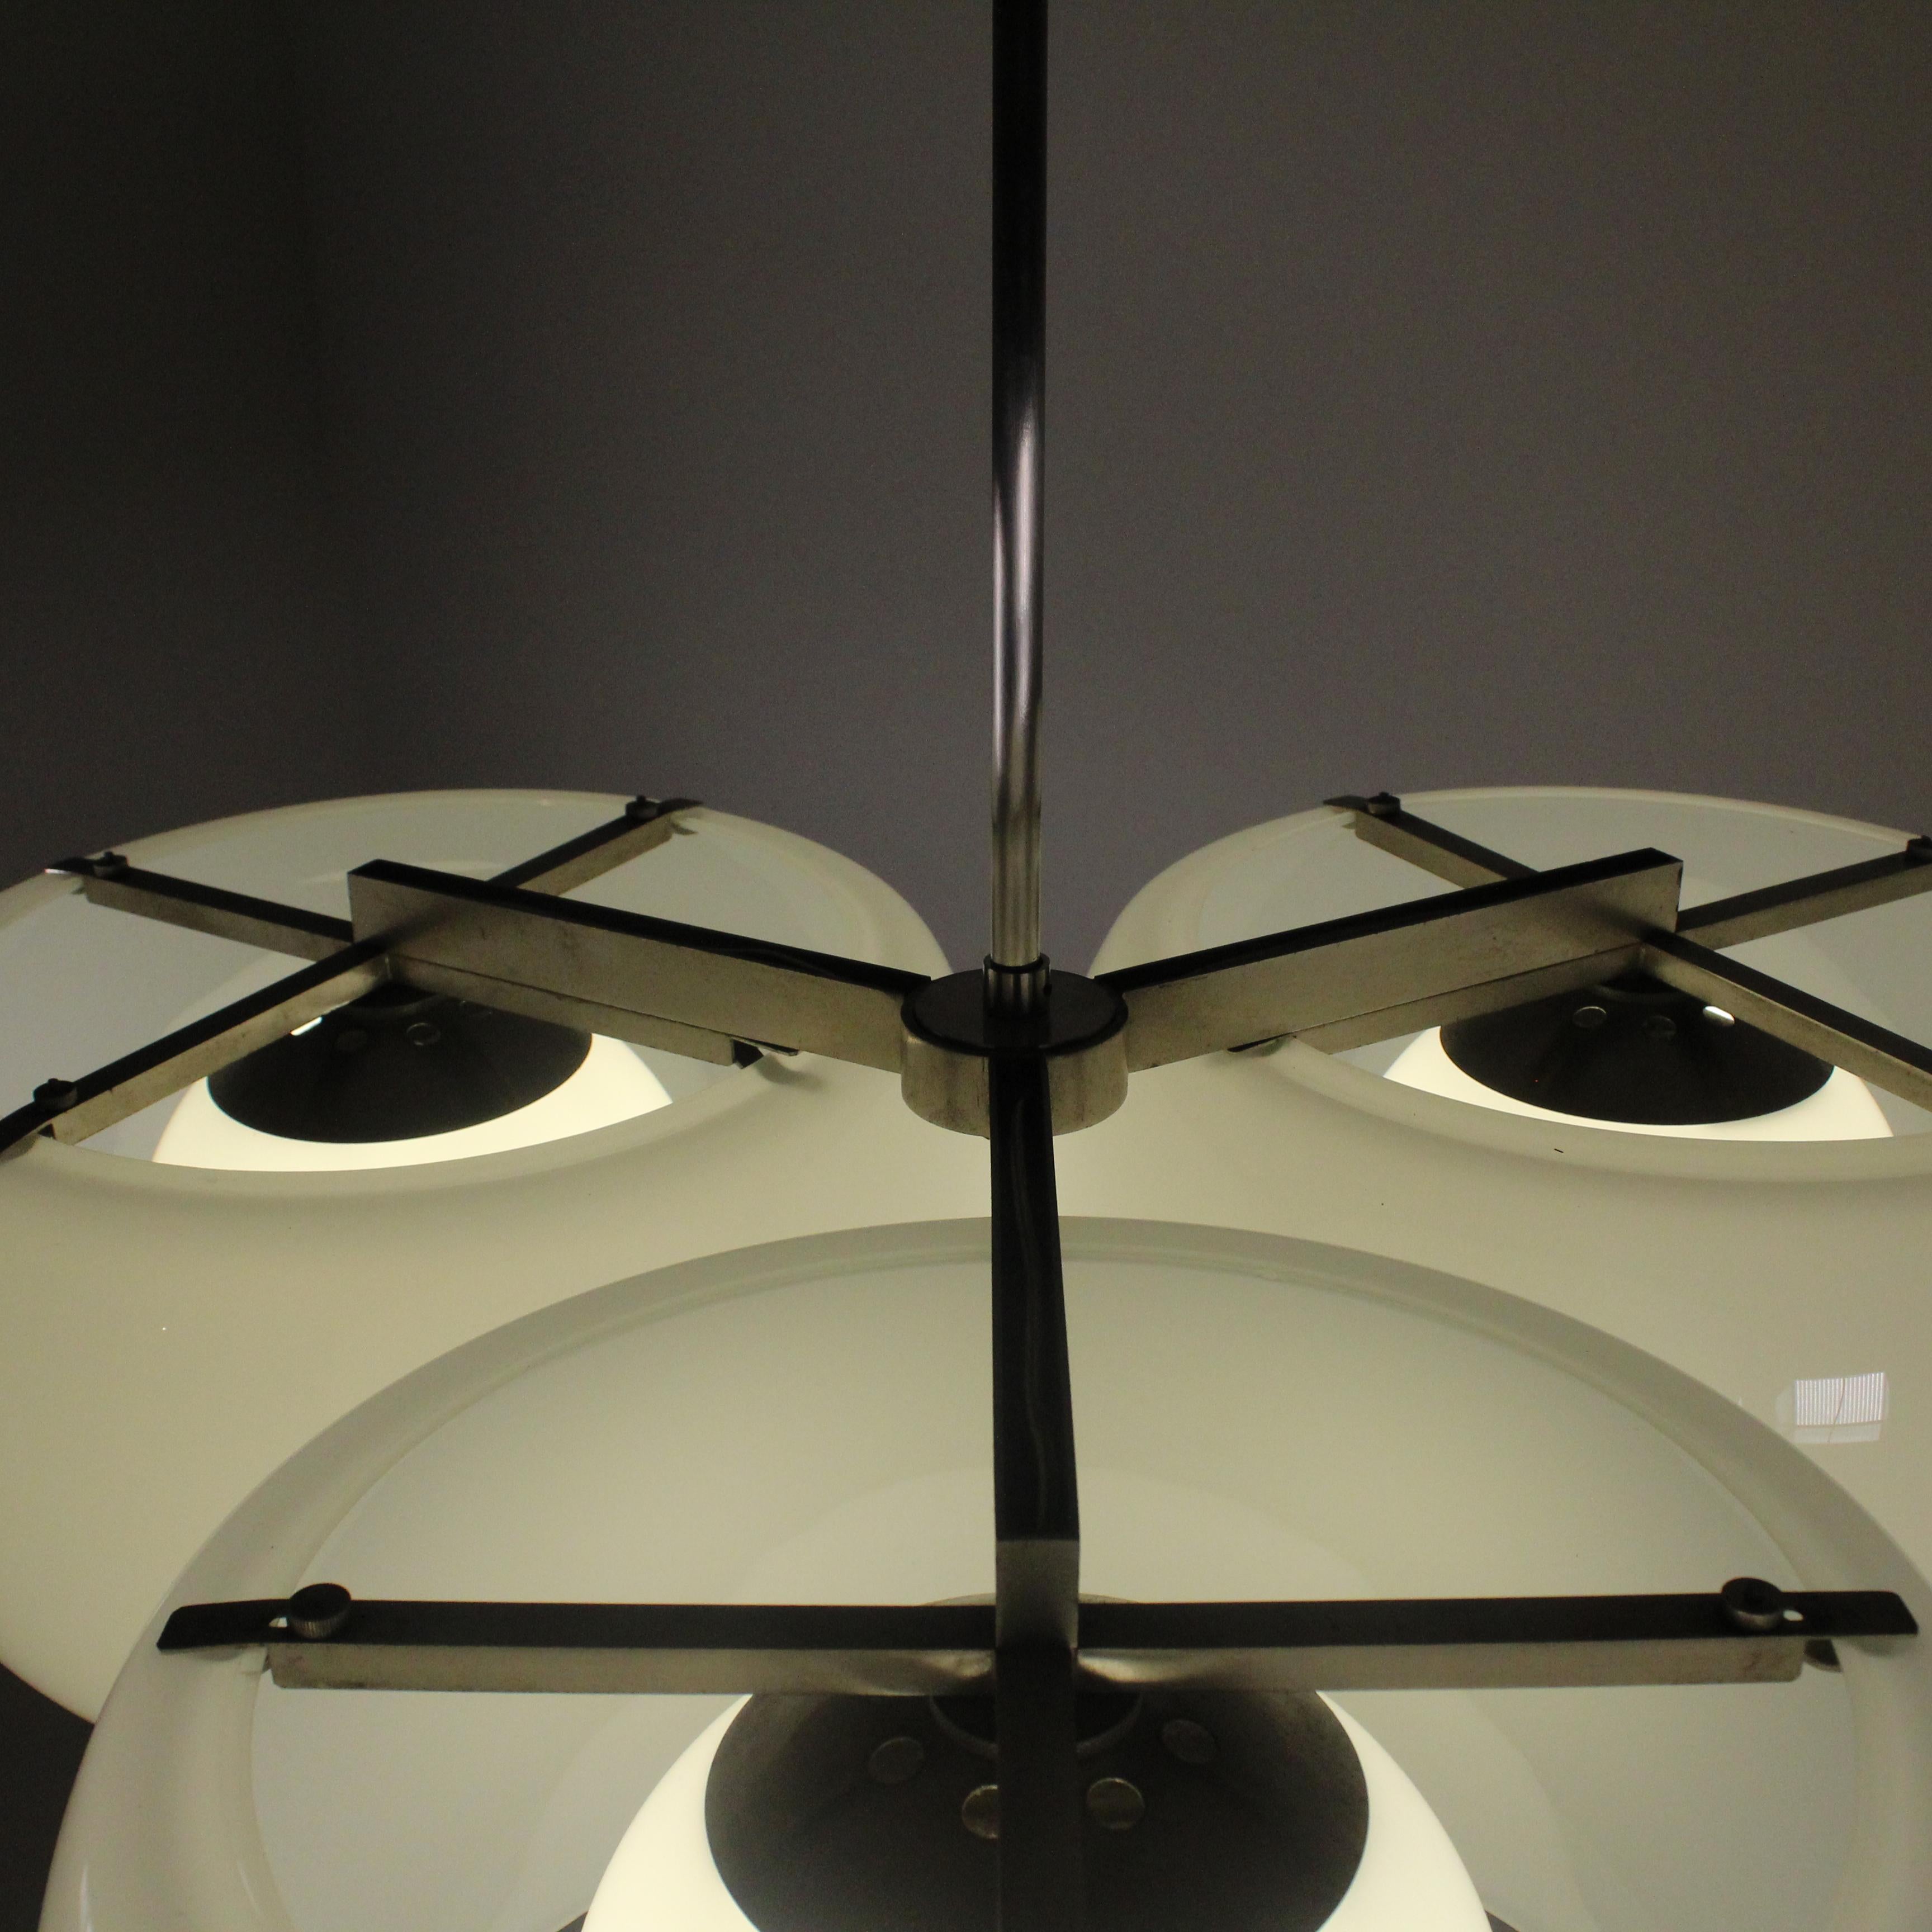 Le lustre Triclinio de Vico Magistretti pour Artemide, datant de 1961, est une œuvre emblématique du design italien. Sa structure audacieuse et innovante, composée d'éléments courbes et sinueux, évoque un sentiment de légèreté et de mouvement.